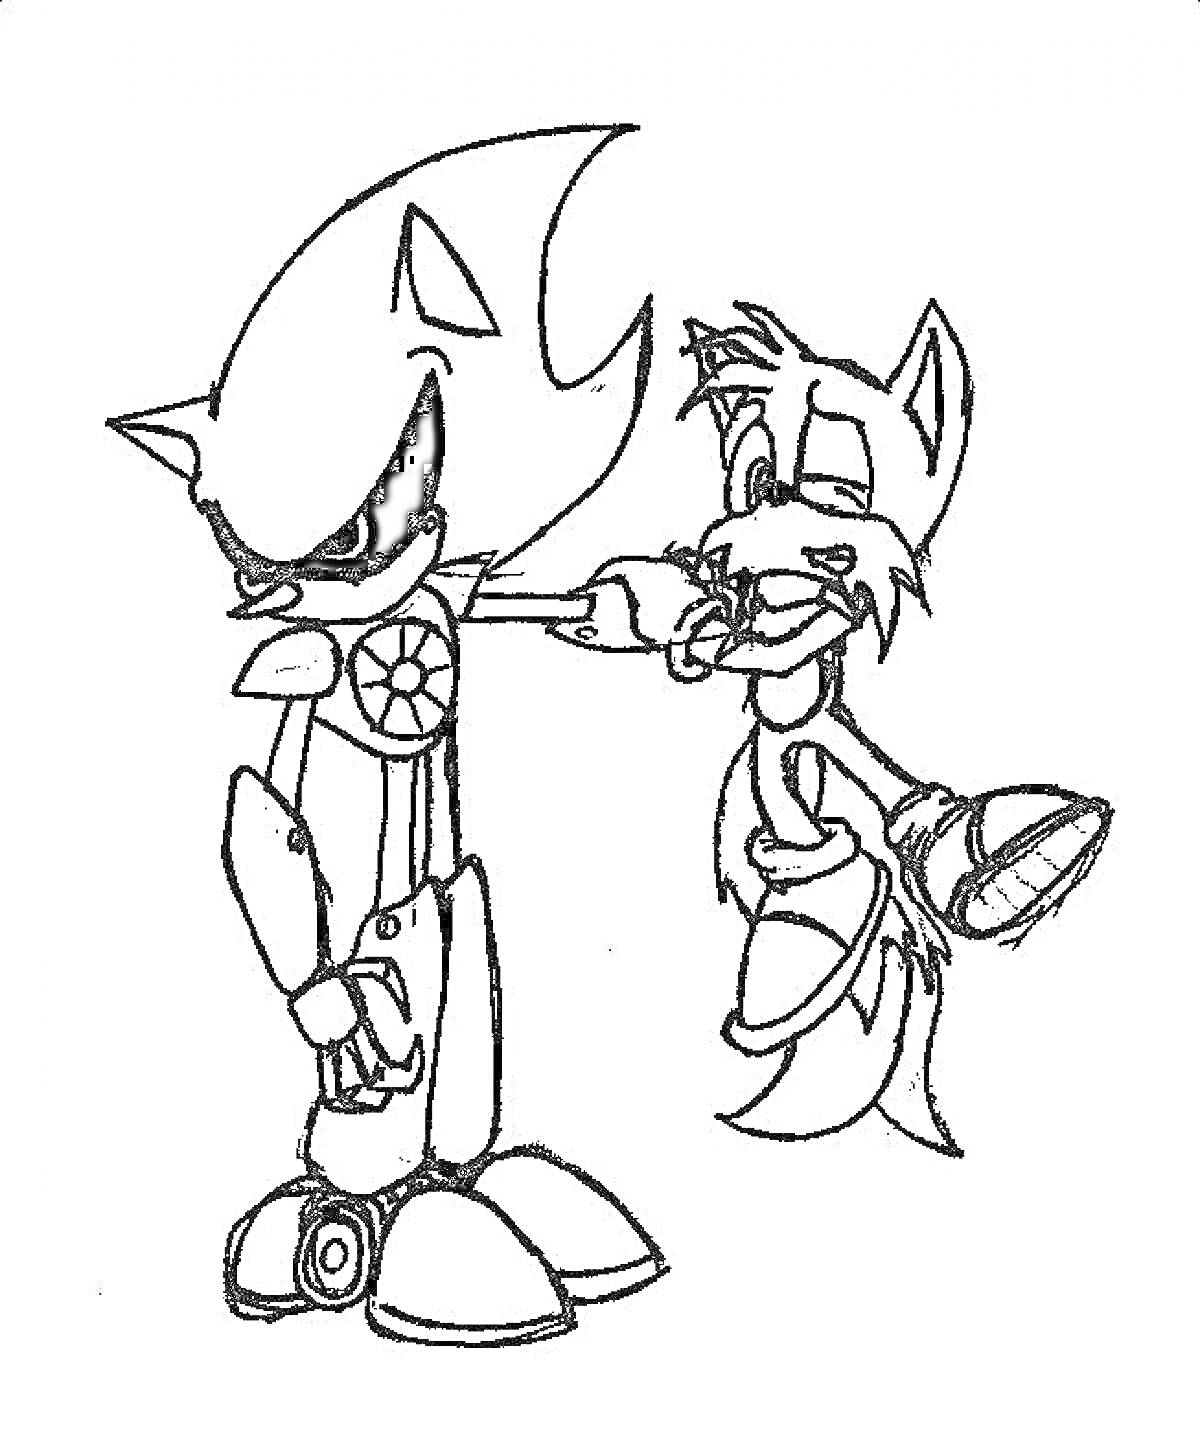 Раскраска Sonic.exe держит Tails за руку, причем Tails выглядит напуганным и без сознания, оба персонажа покрыты раскадками с драматическими эмоциями